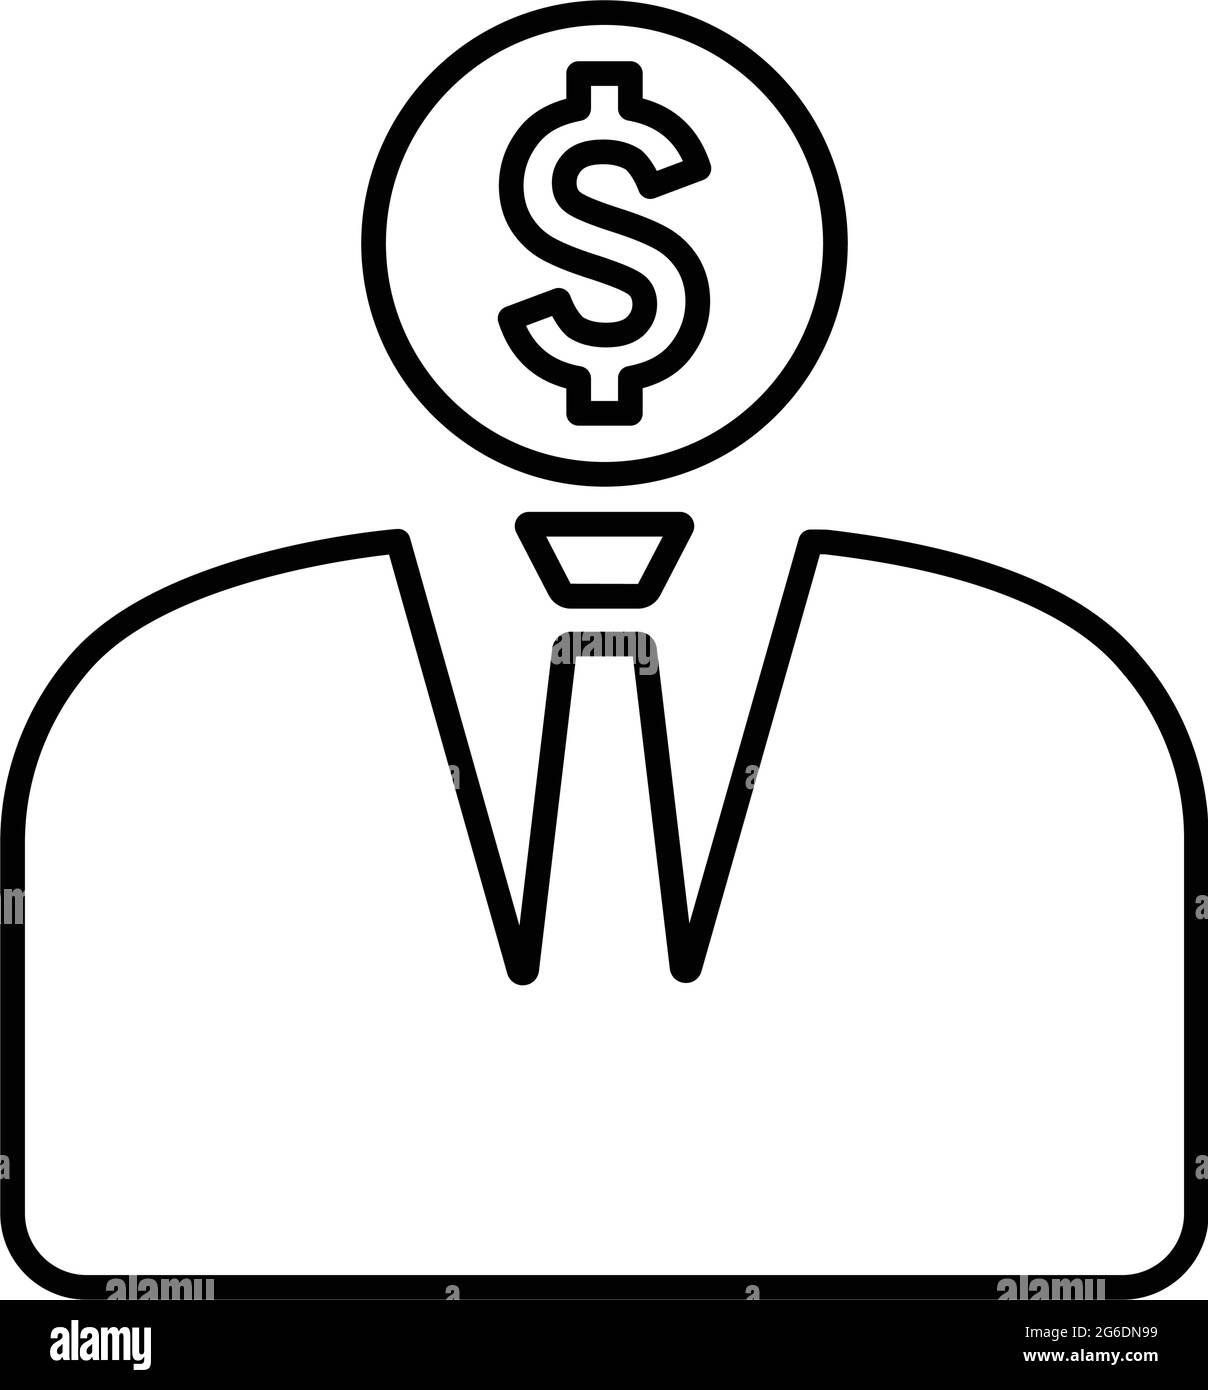 Banchiere, icona uomo d'affari è isolato su sfondo bianco. Da utilizzare per la grafica e il web design o per scopi commerciali. File EPS vettoriale. Illustrazione Vettoriale